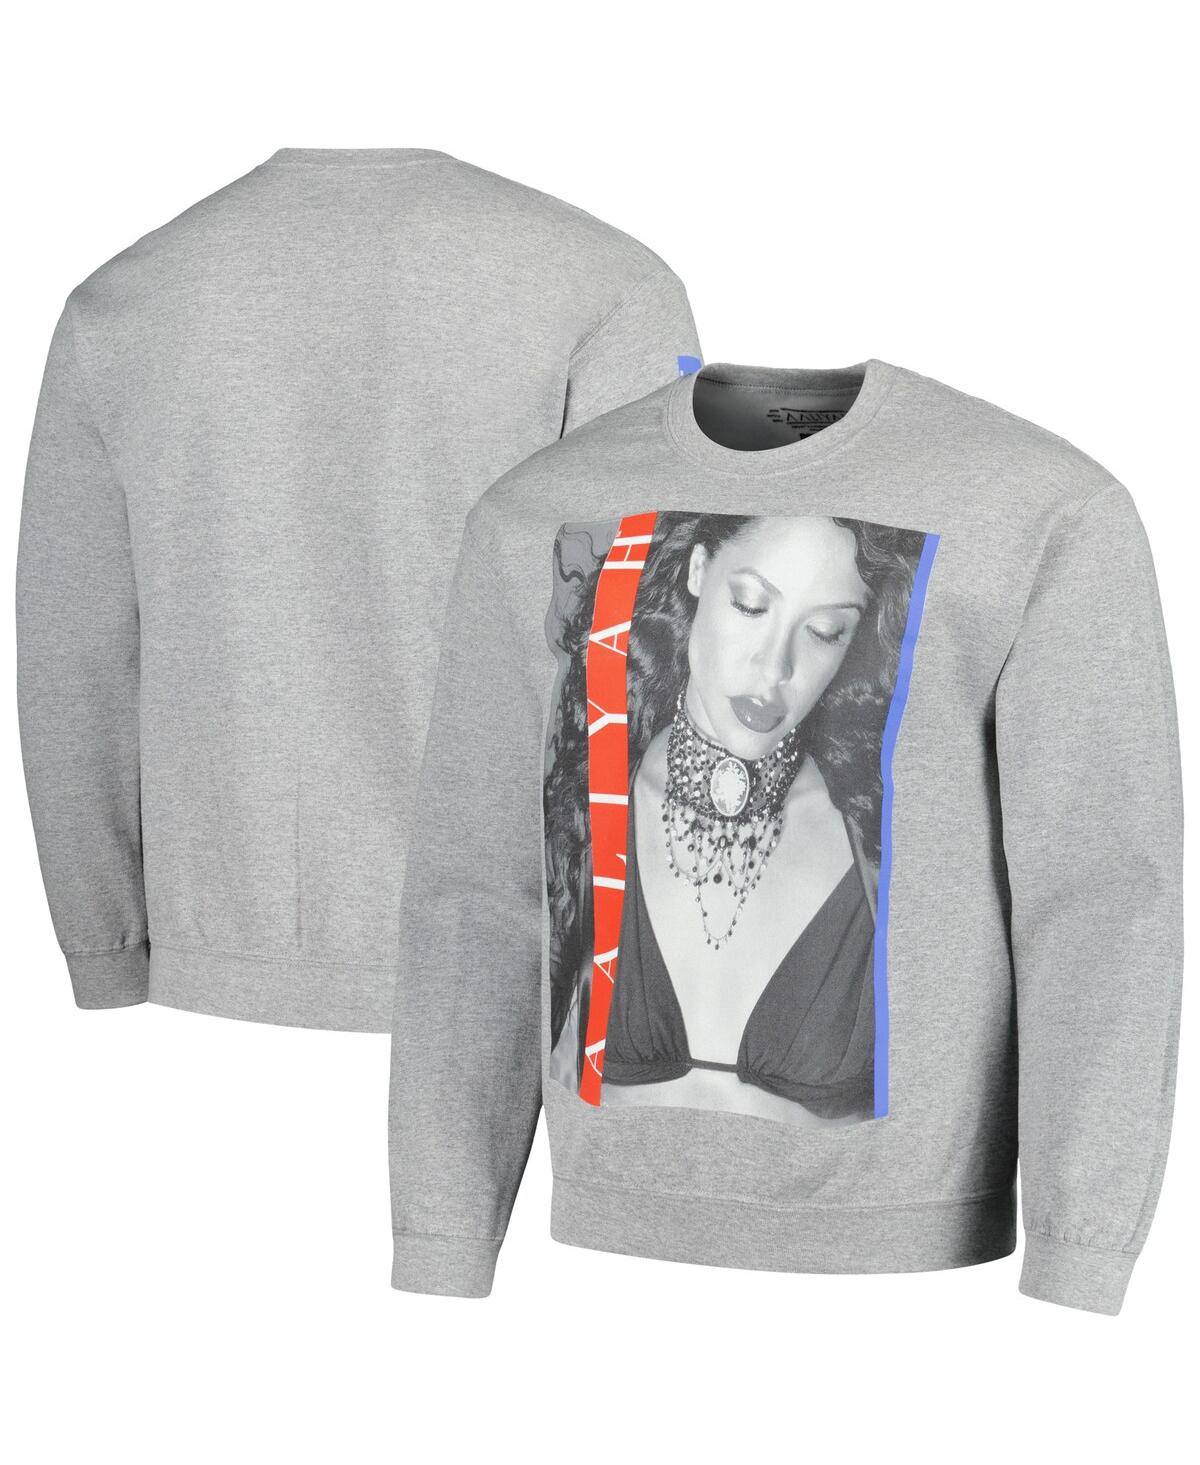 Men's and Women's Ripple Junction Heather Gray Aaliyah Graphic Fleece Sweatshirt - Heather Gray